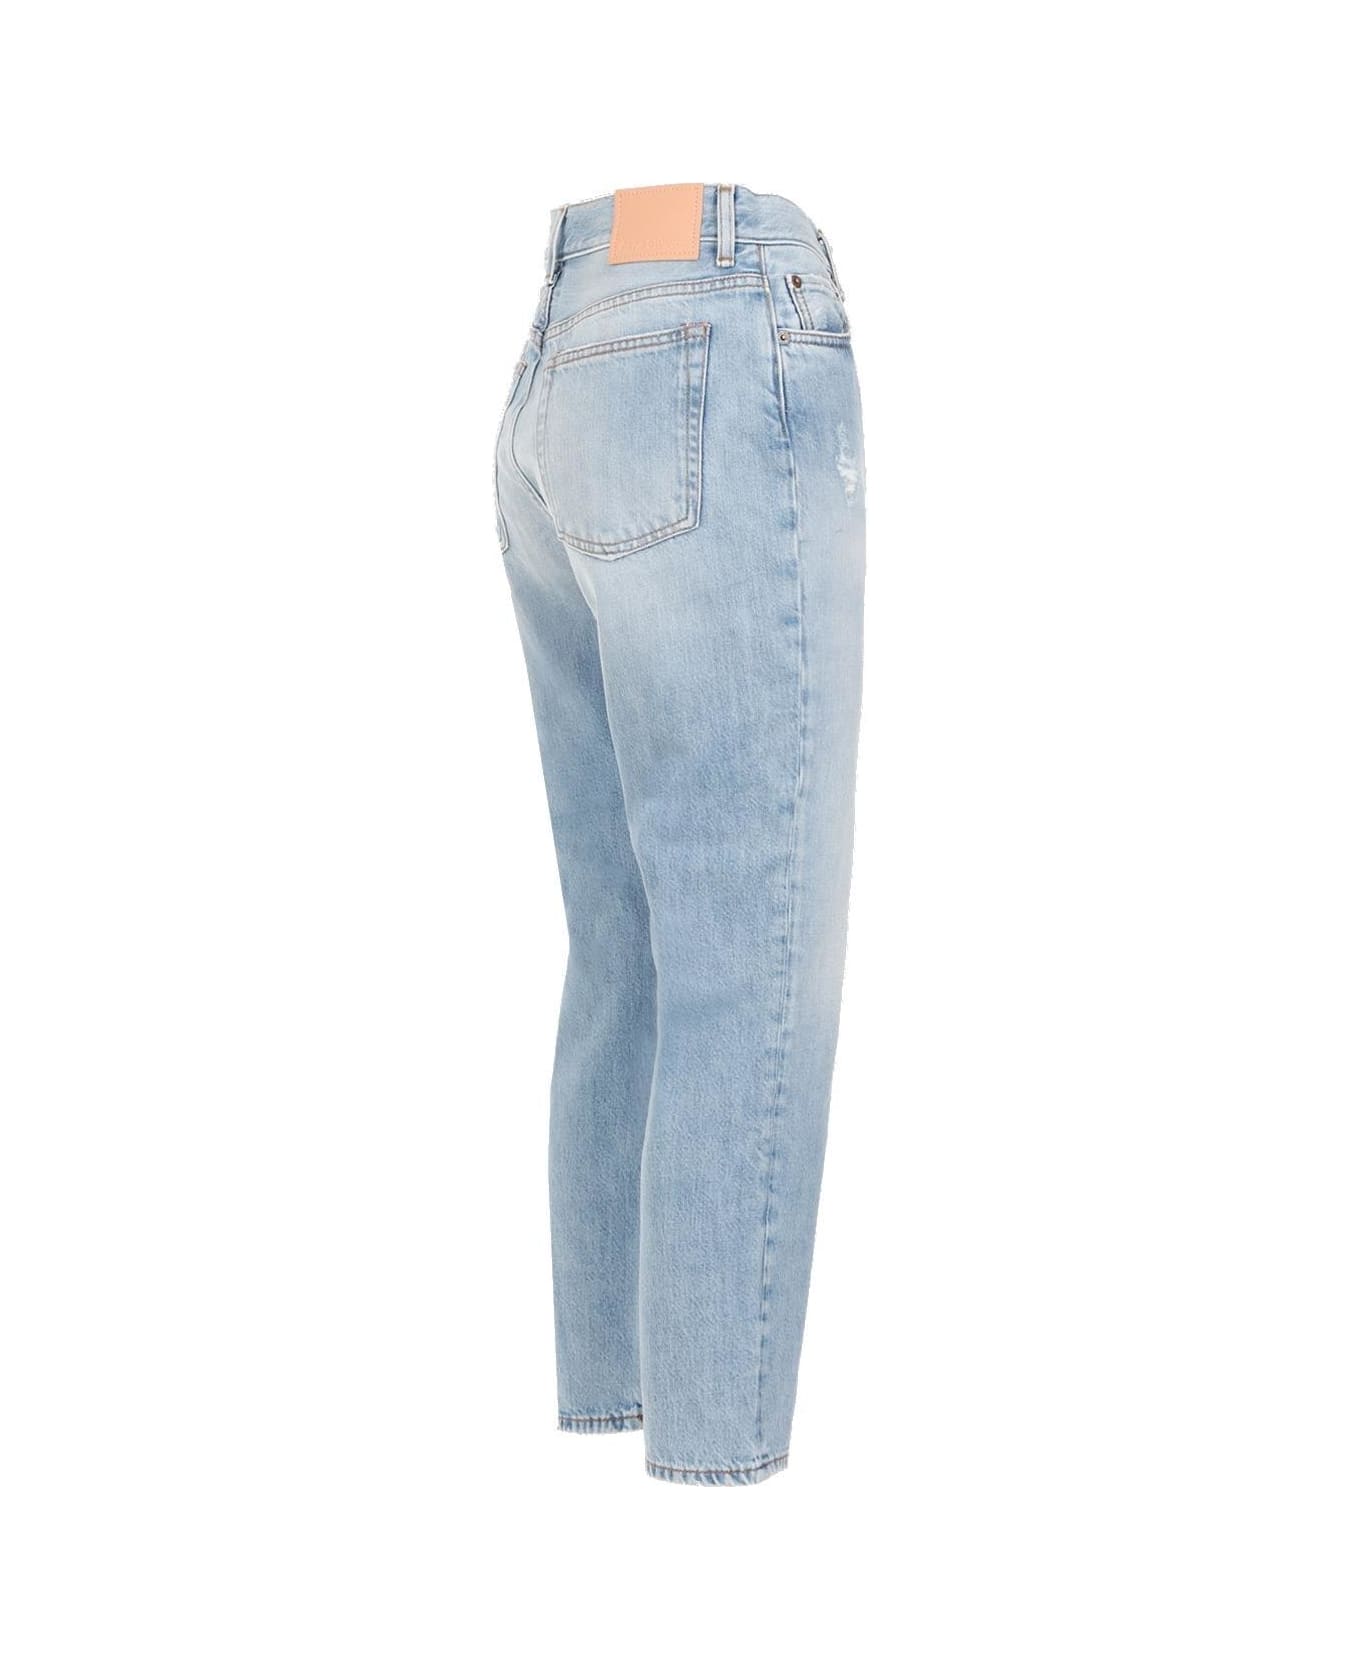 Acne Studios High-waisted Straight-leg Jeans - Light blue